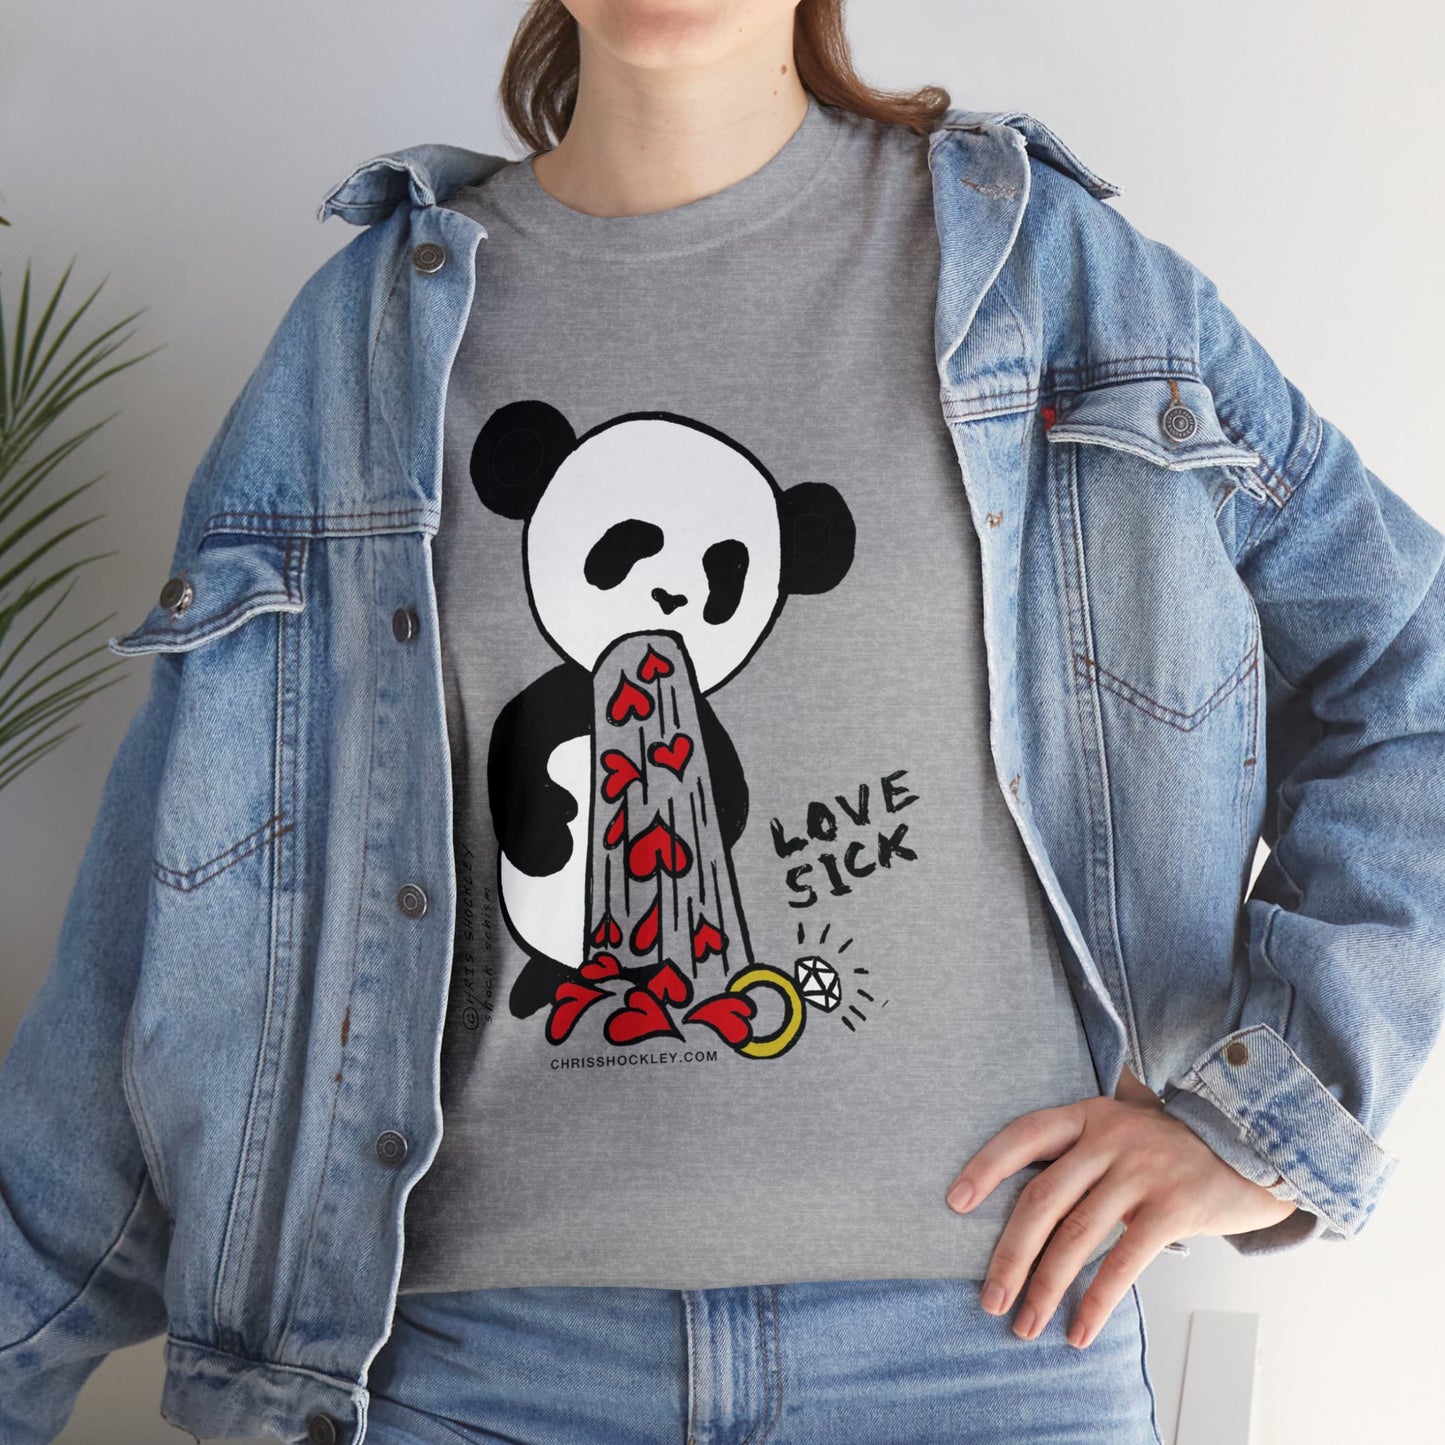 Love Sick Panda - Unisex Heavy Cotton Tee